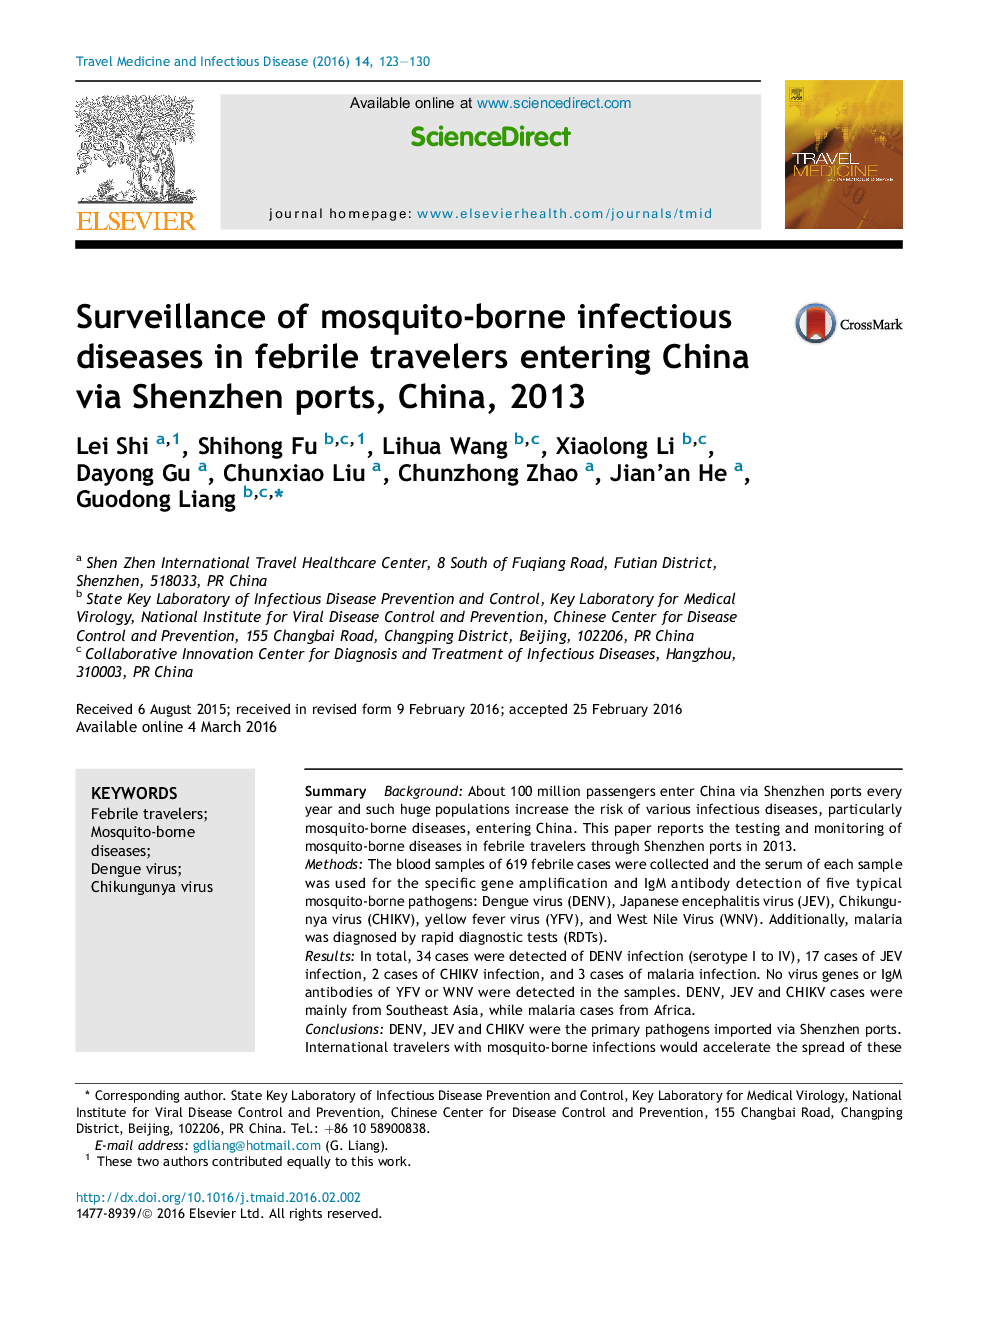 دوربین های مدار بسته برای نظارت بر بیماری های عفونی انتقالی از راه پشه در مسافران تب دار برای ورود به چین از طریق بنادر شنژن، چین، 2013